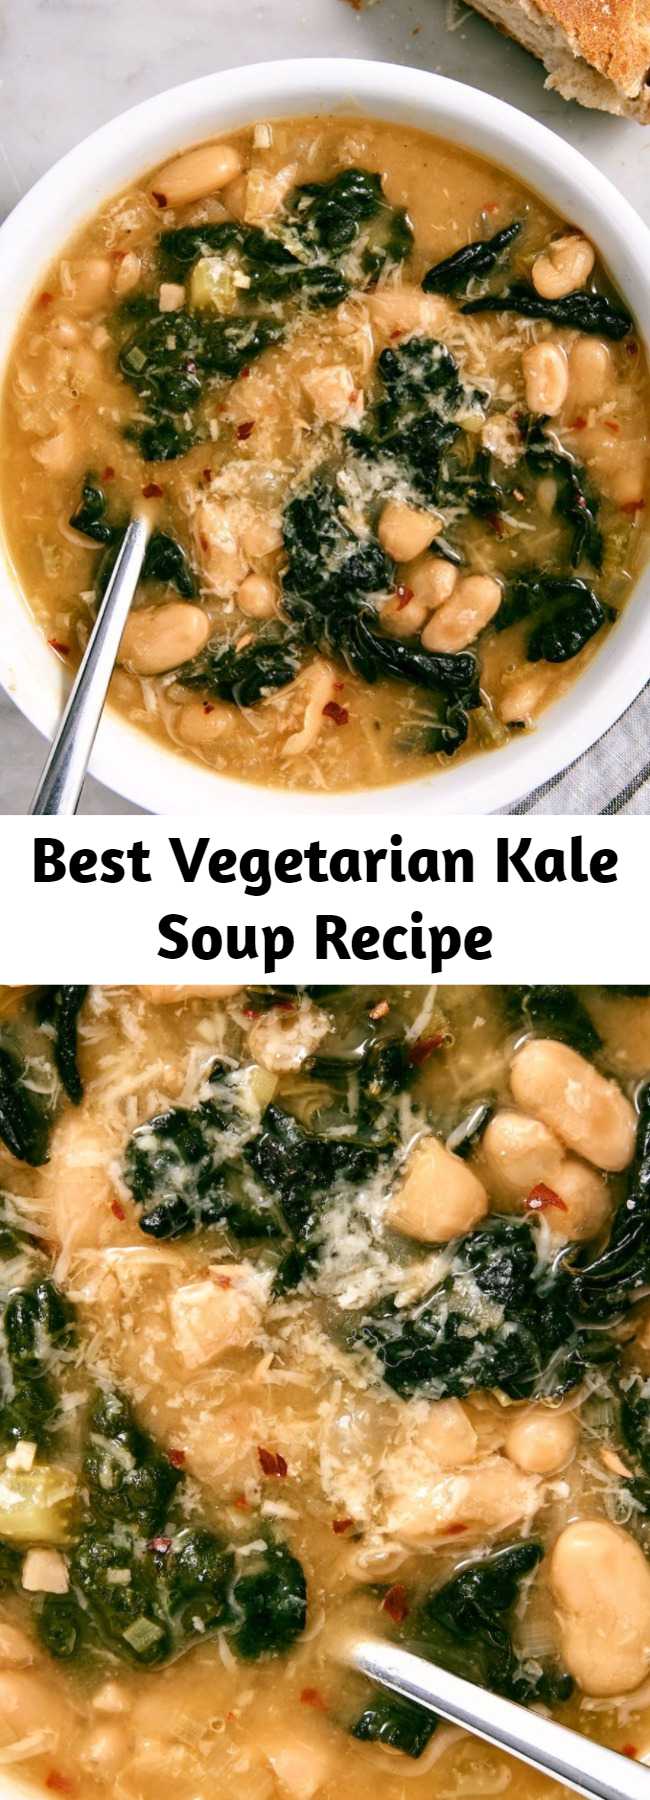 Best Vegetarian Kale Soup Recipe - Kale Soup is a hearty, vegetarian delight.